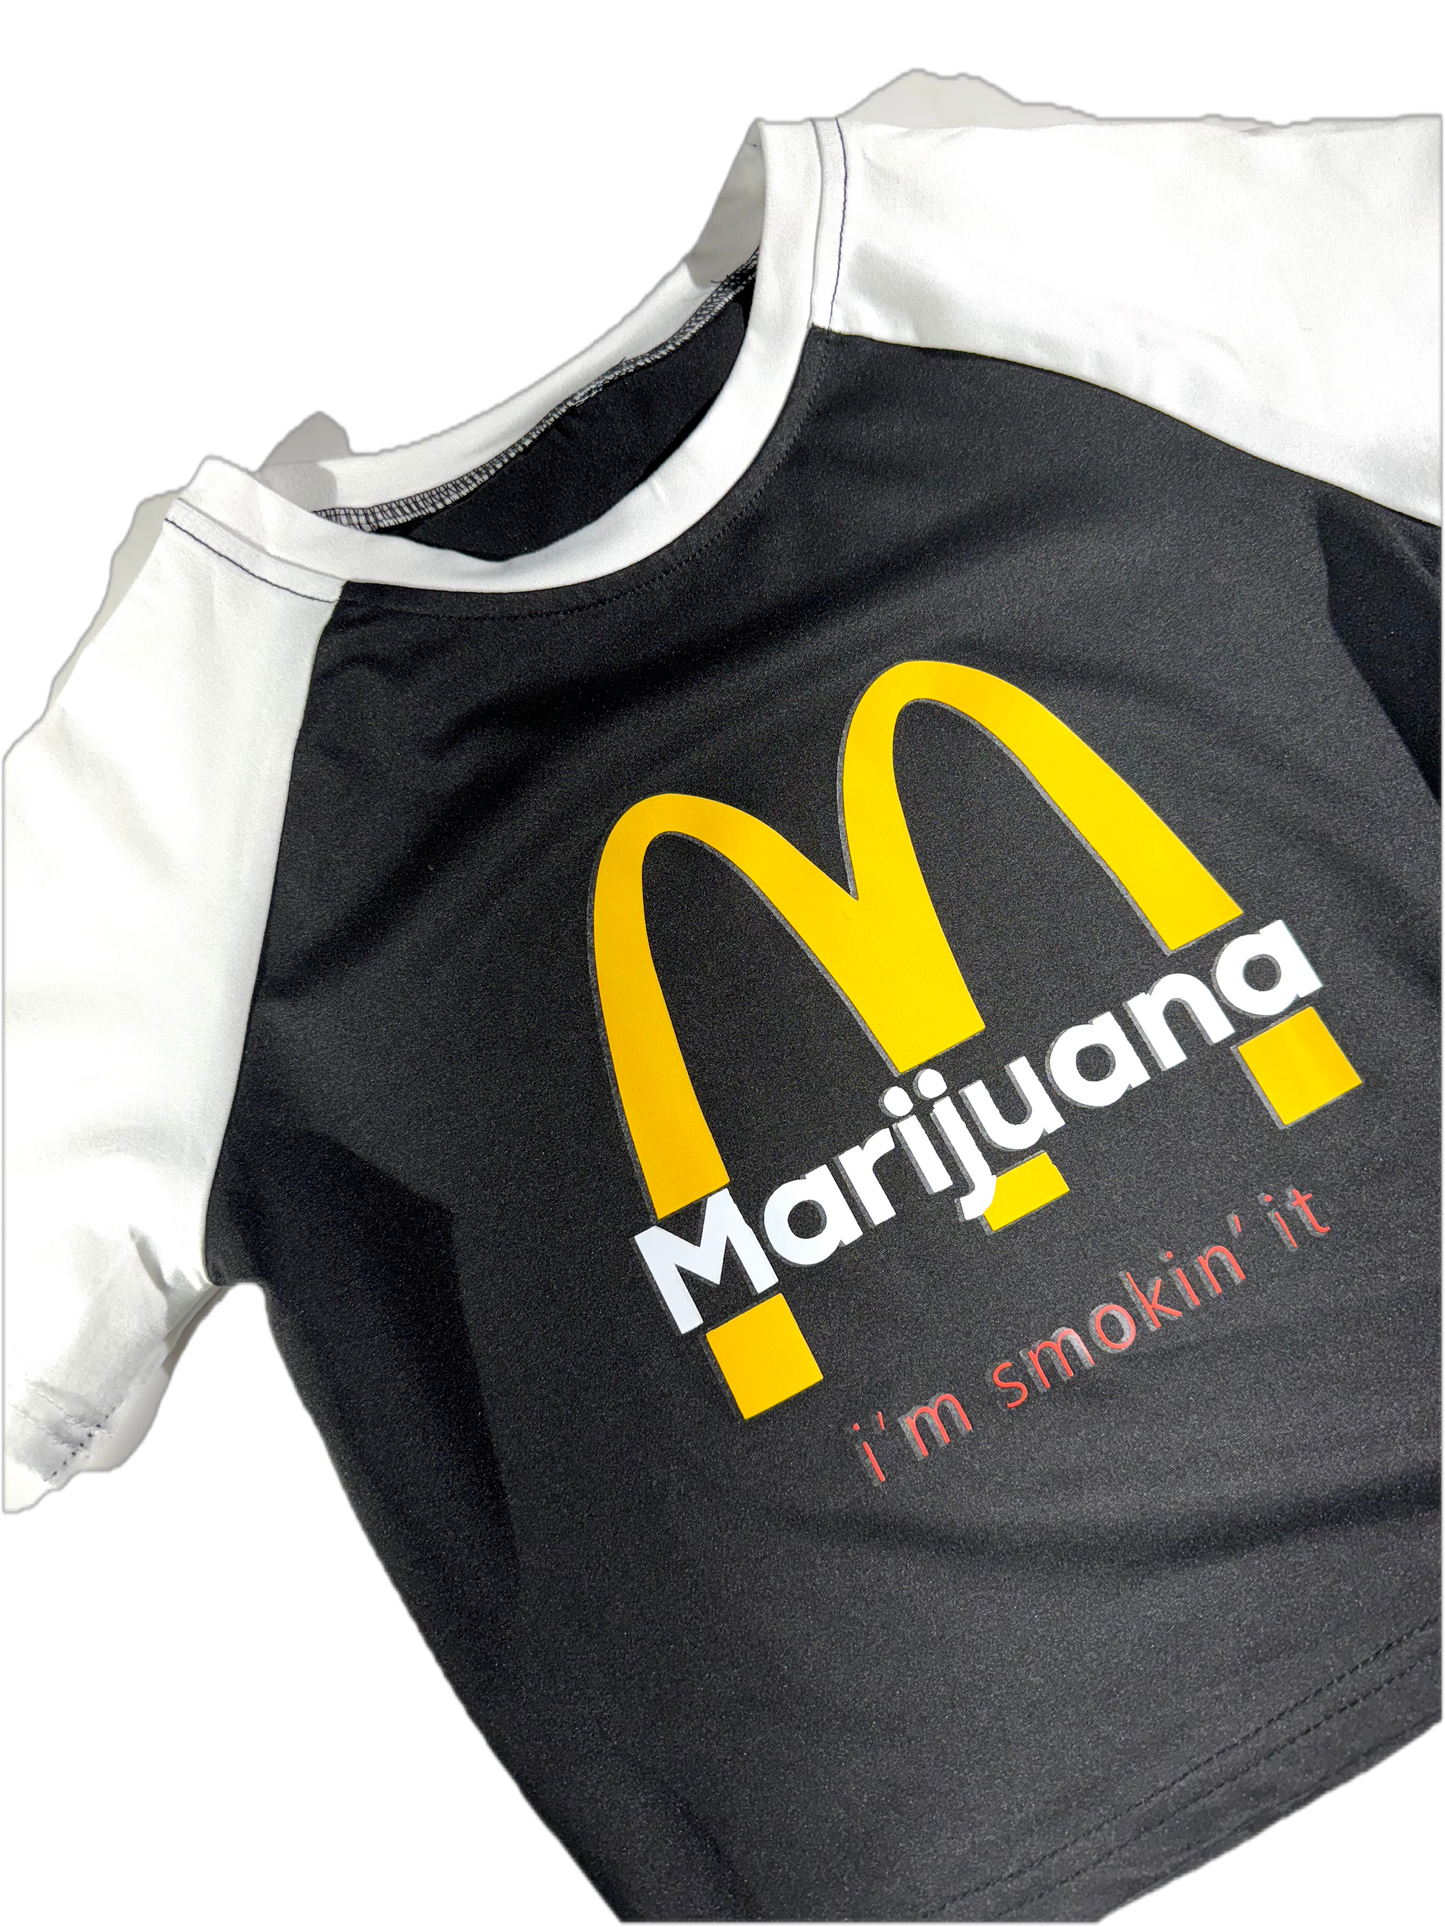 Marijuana McDonalds Baby Tee